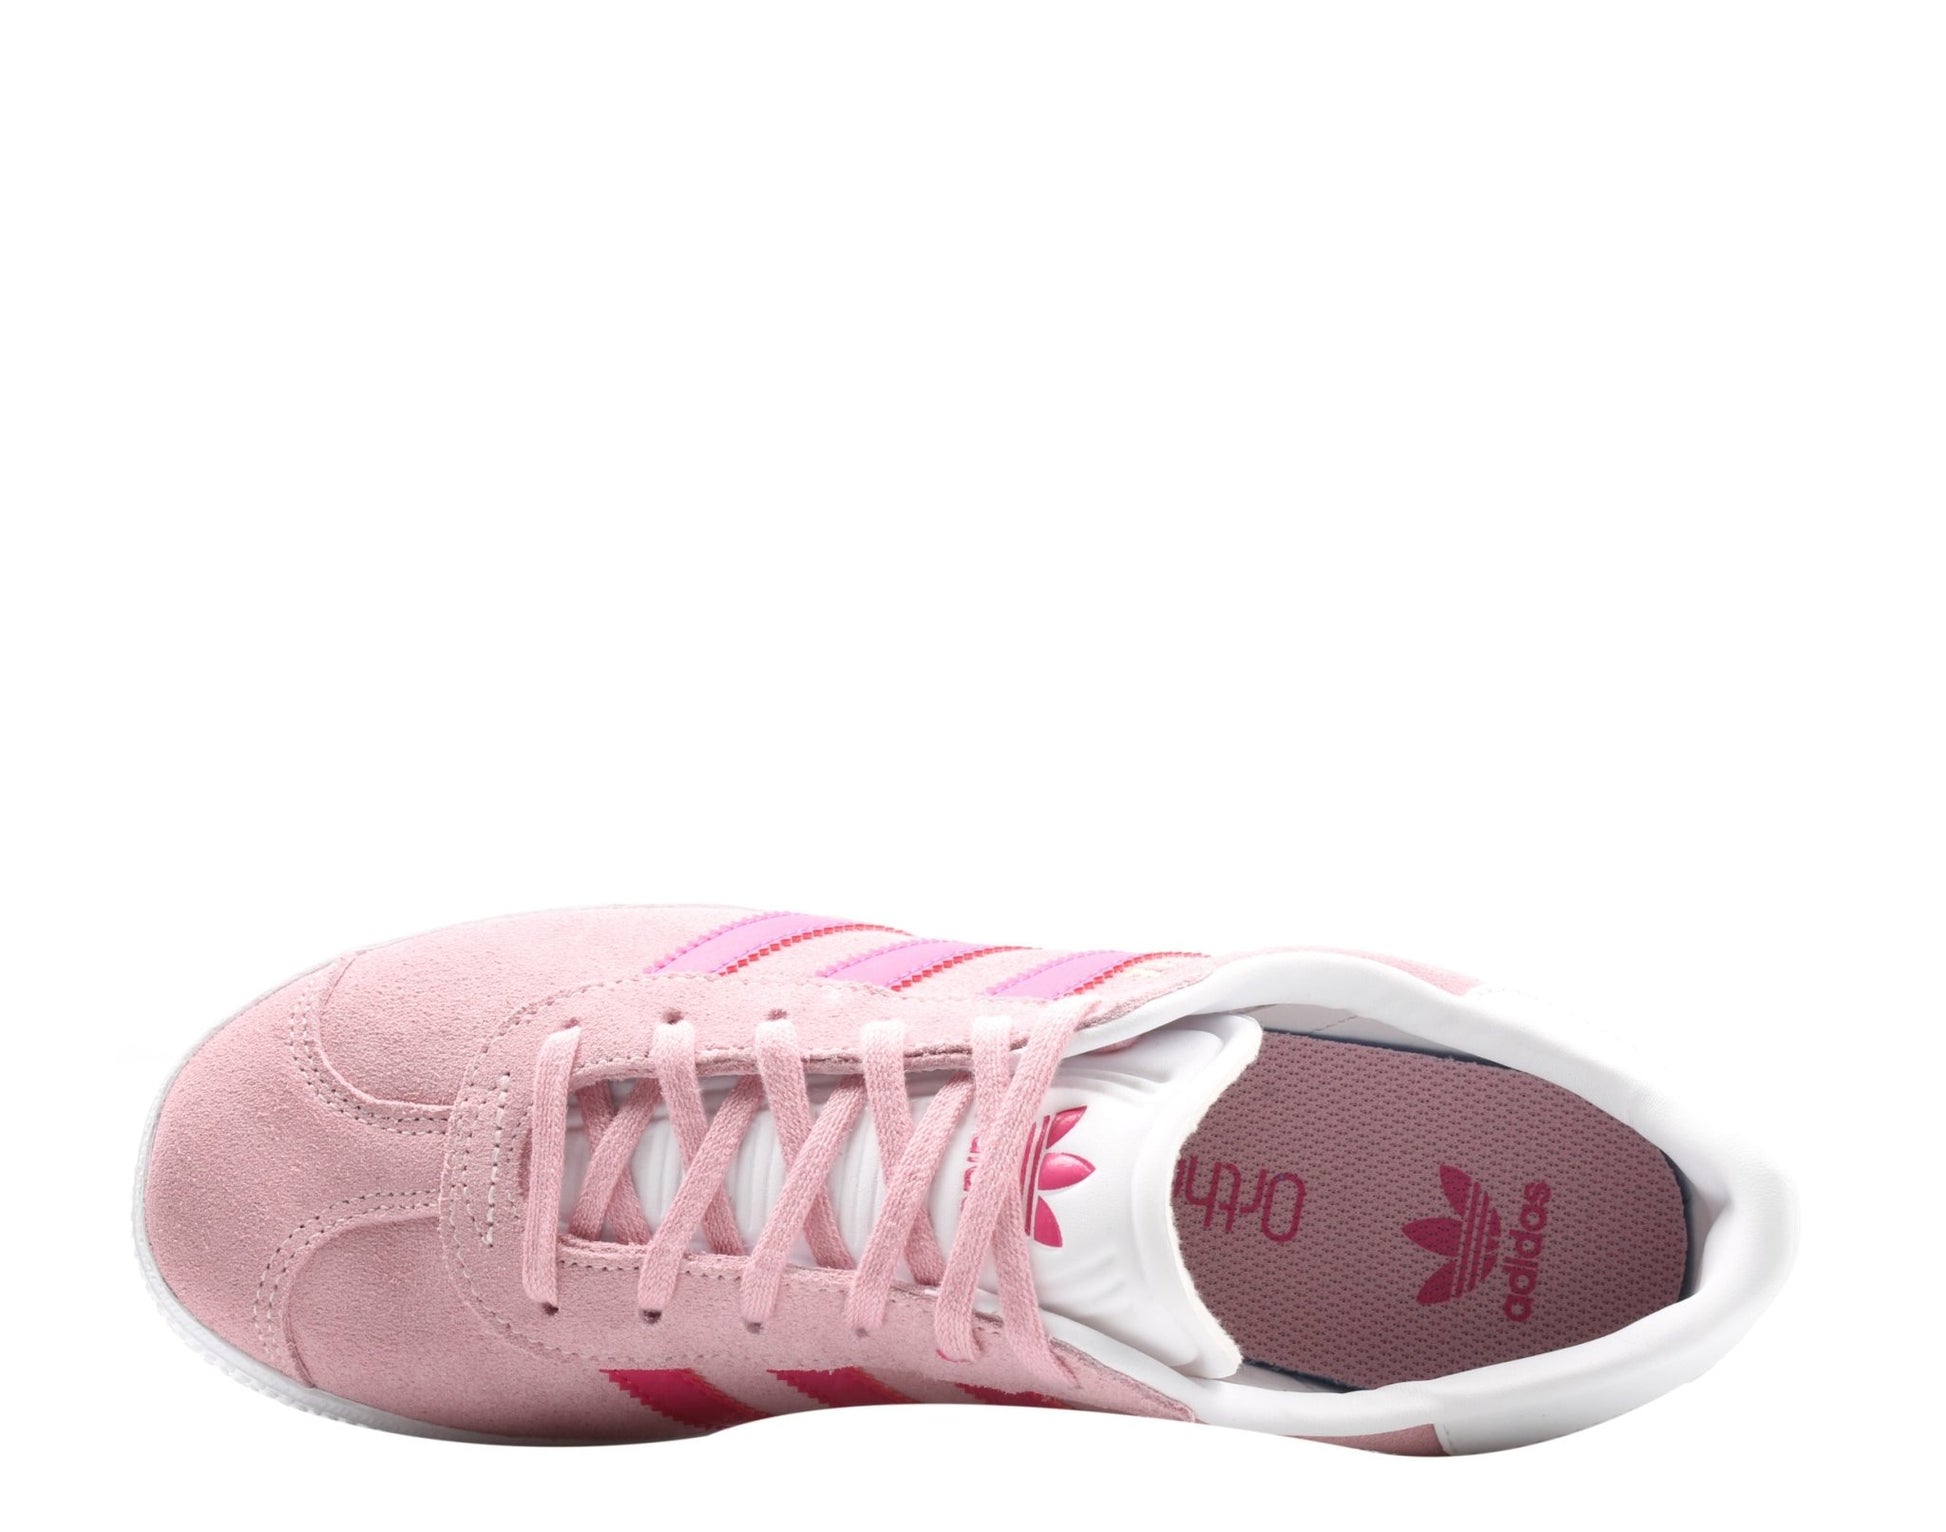 Adidas Originals Gazelle J Pink/Magenta/White Big Kids Casual Shoes B41517 - Becauze